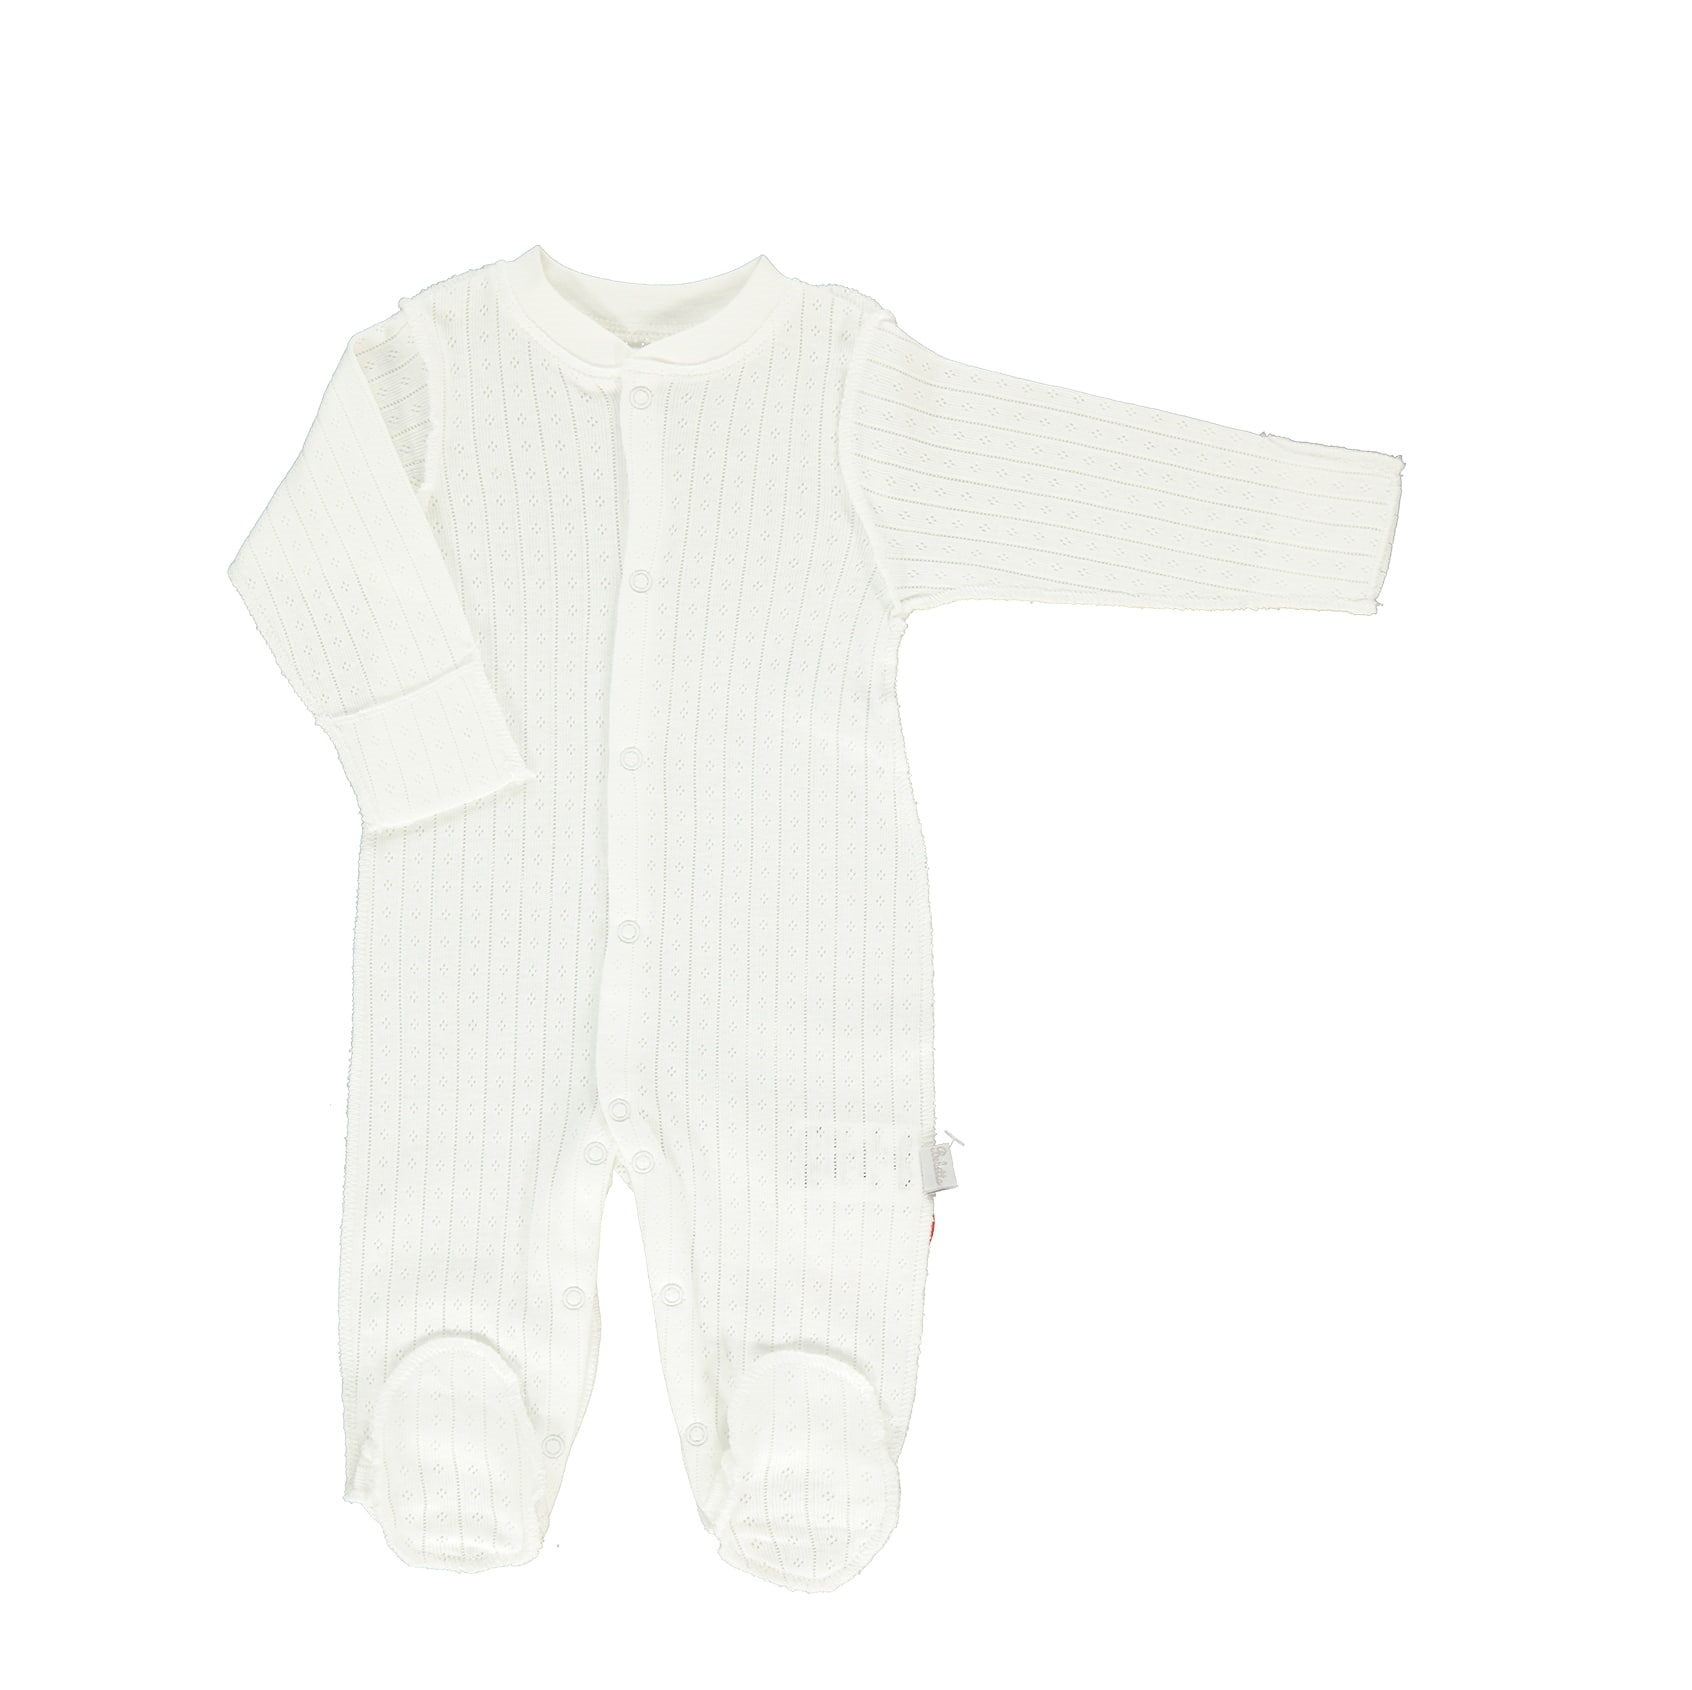 Παιδικά/Baby/Ρούχα/Φορμάκια-Κορμάκια SAM 0-13 - Βρεφικό ολόσωμο φορμάκι SAM 0-13 ΜΜΧ POINTEL λευκό